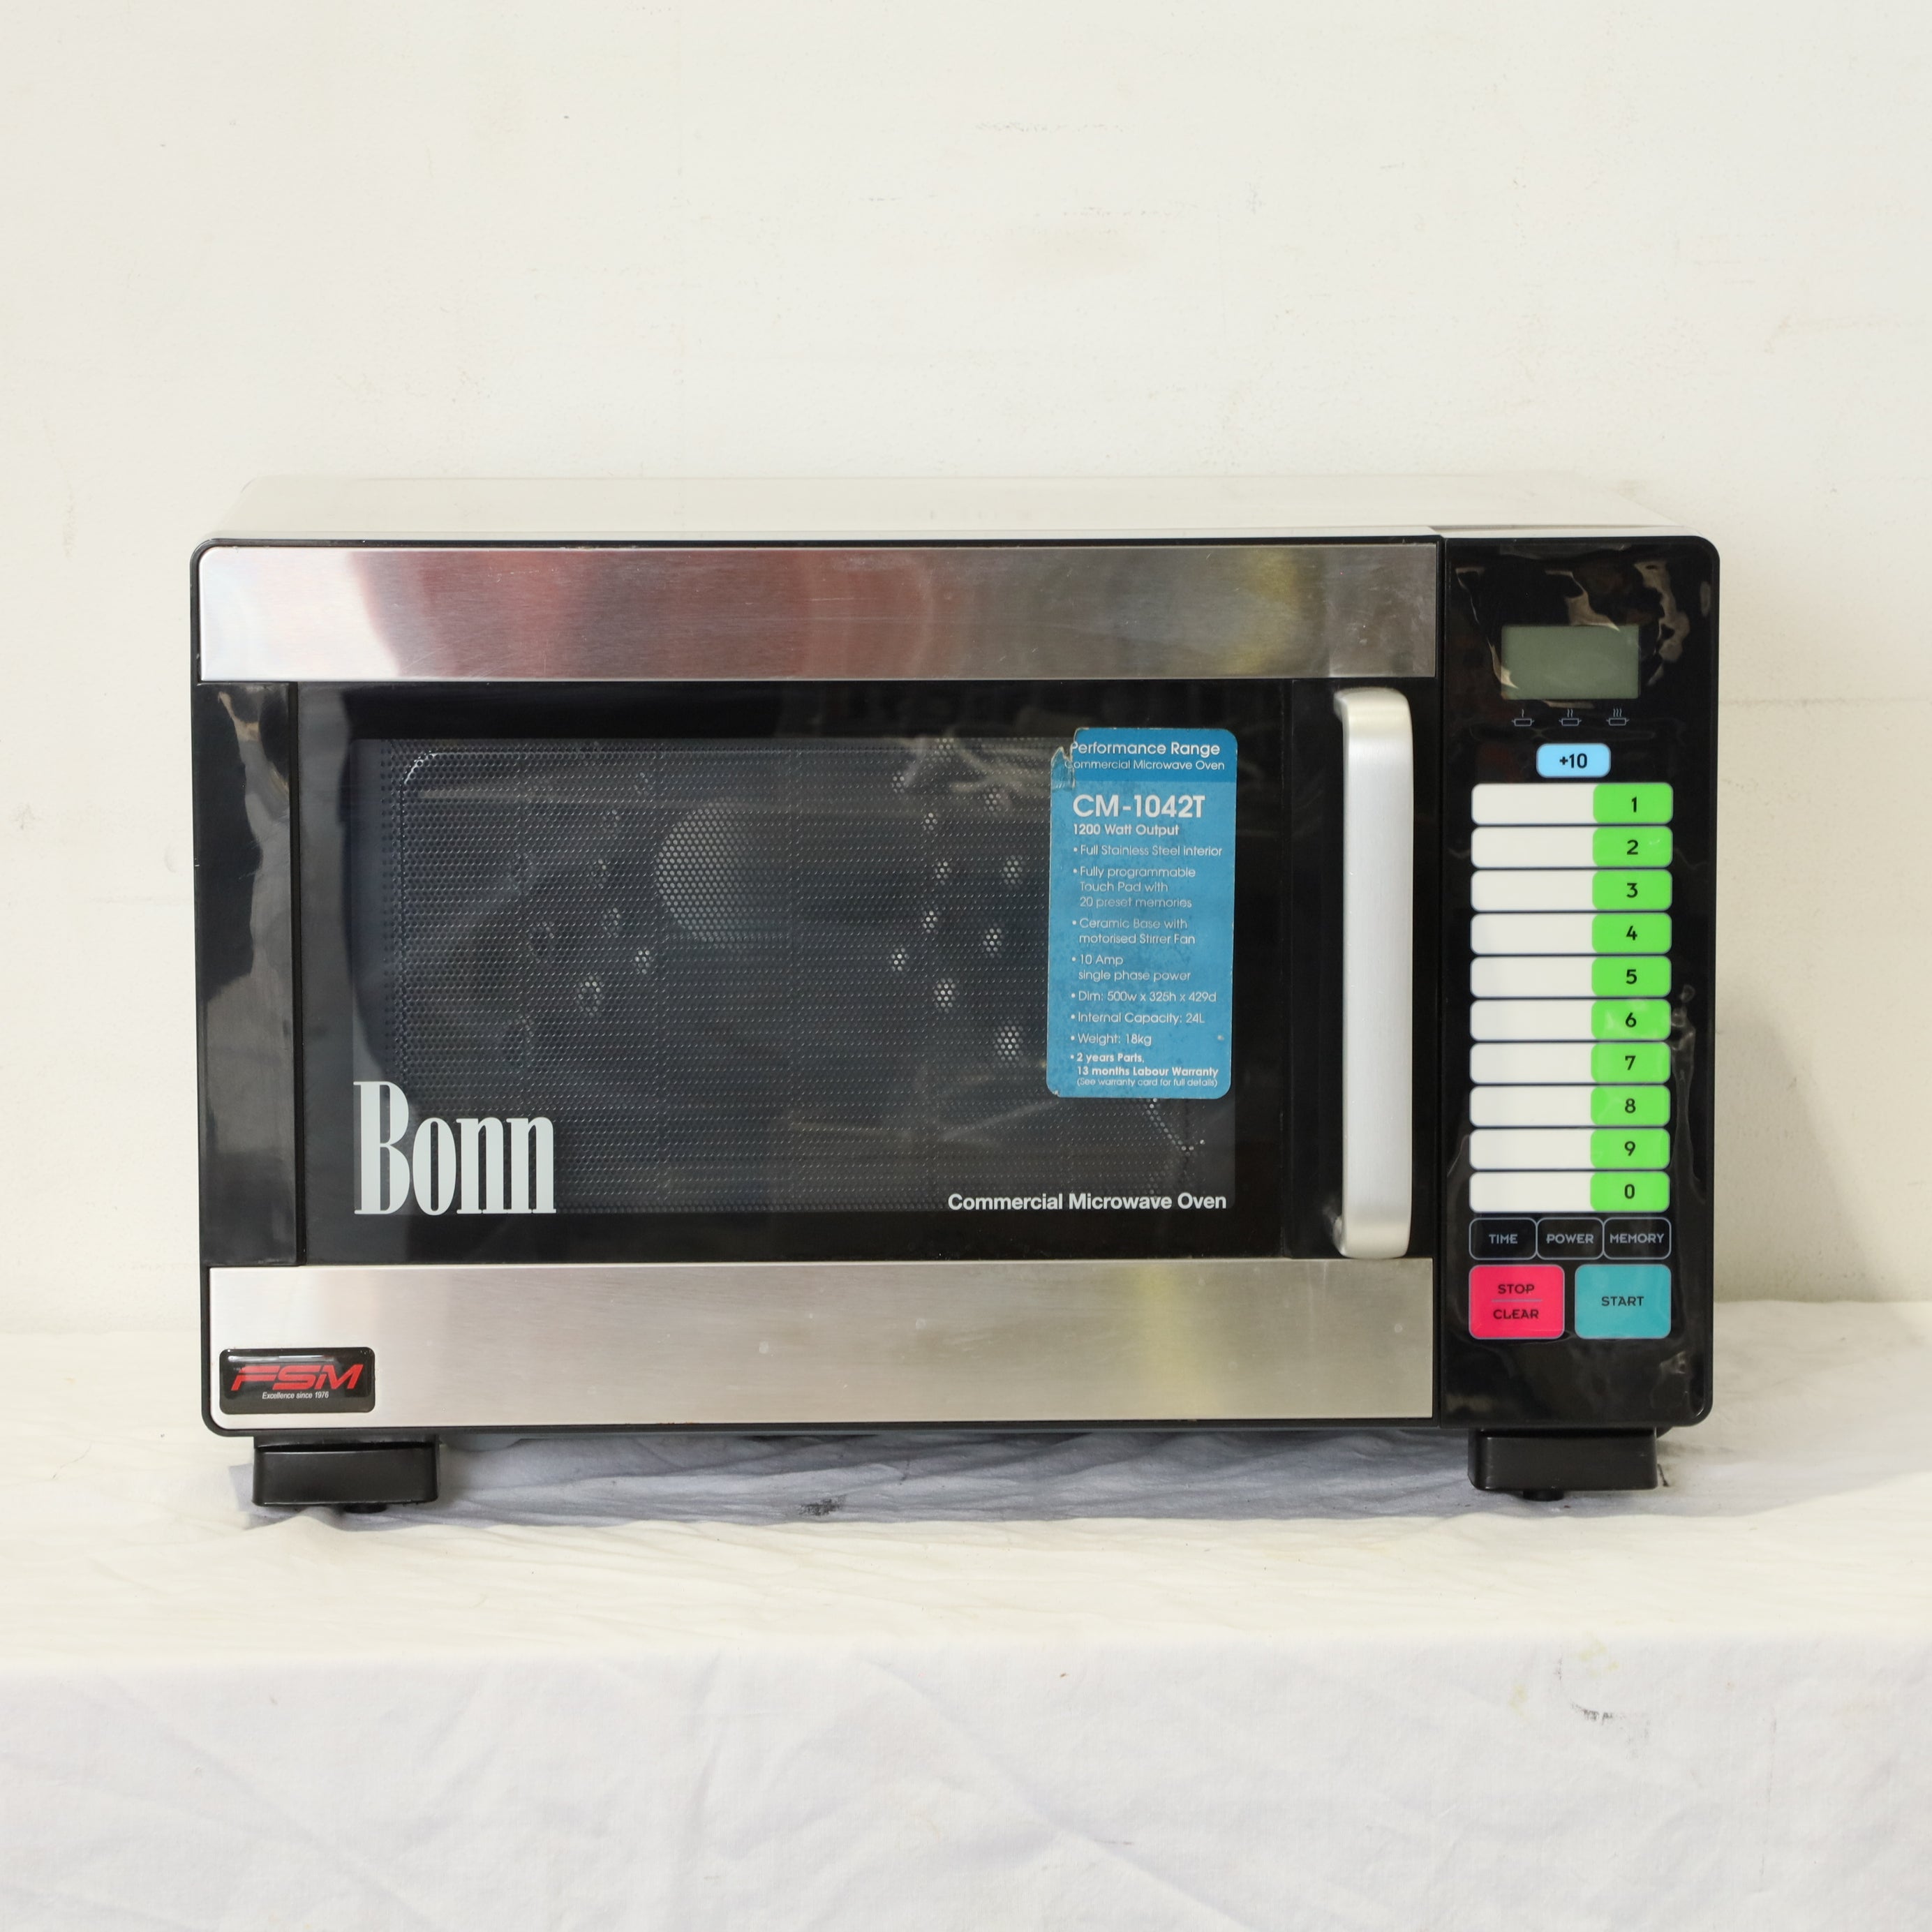 Thumbnail - Bonn CM-1042T Microwave